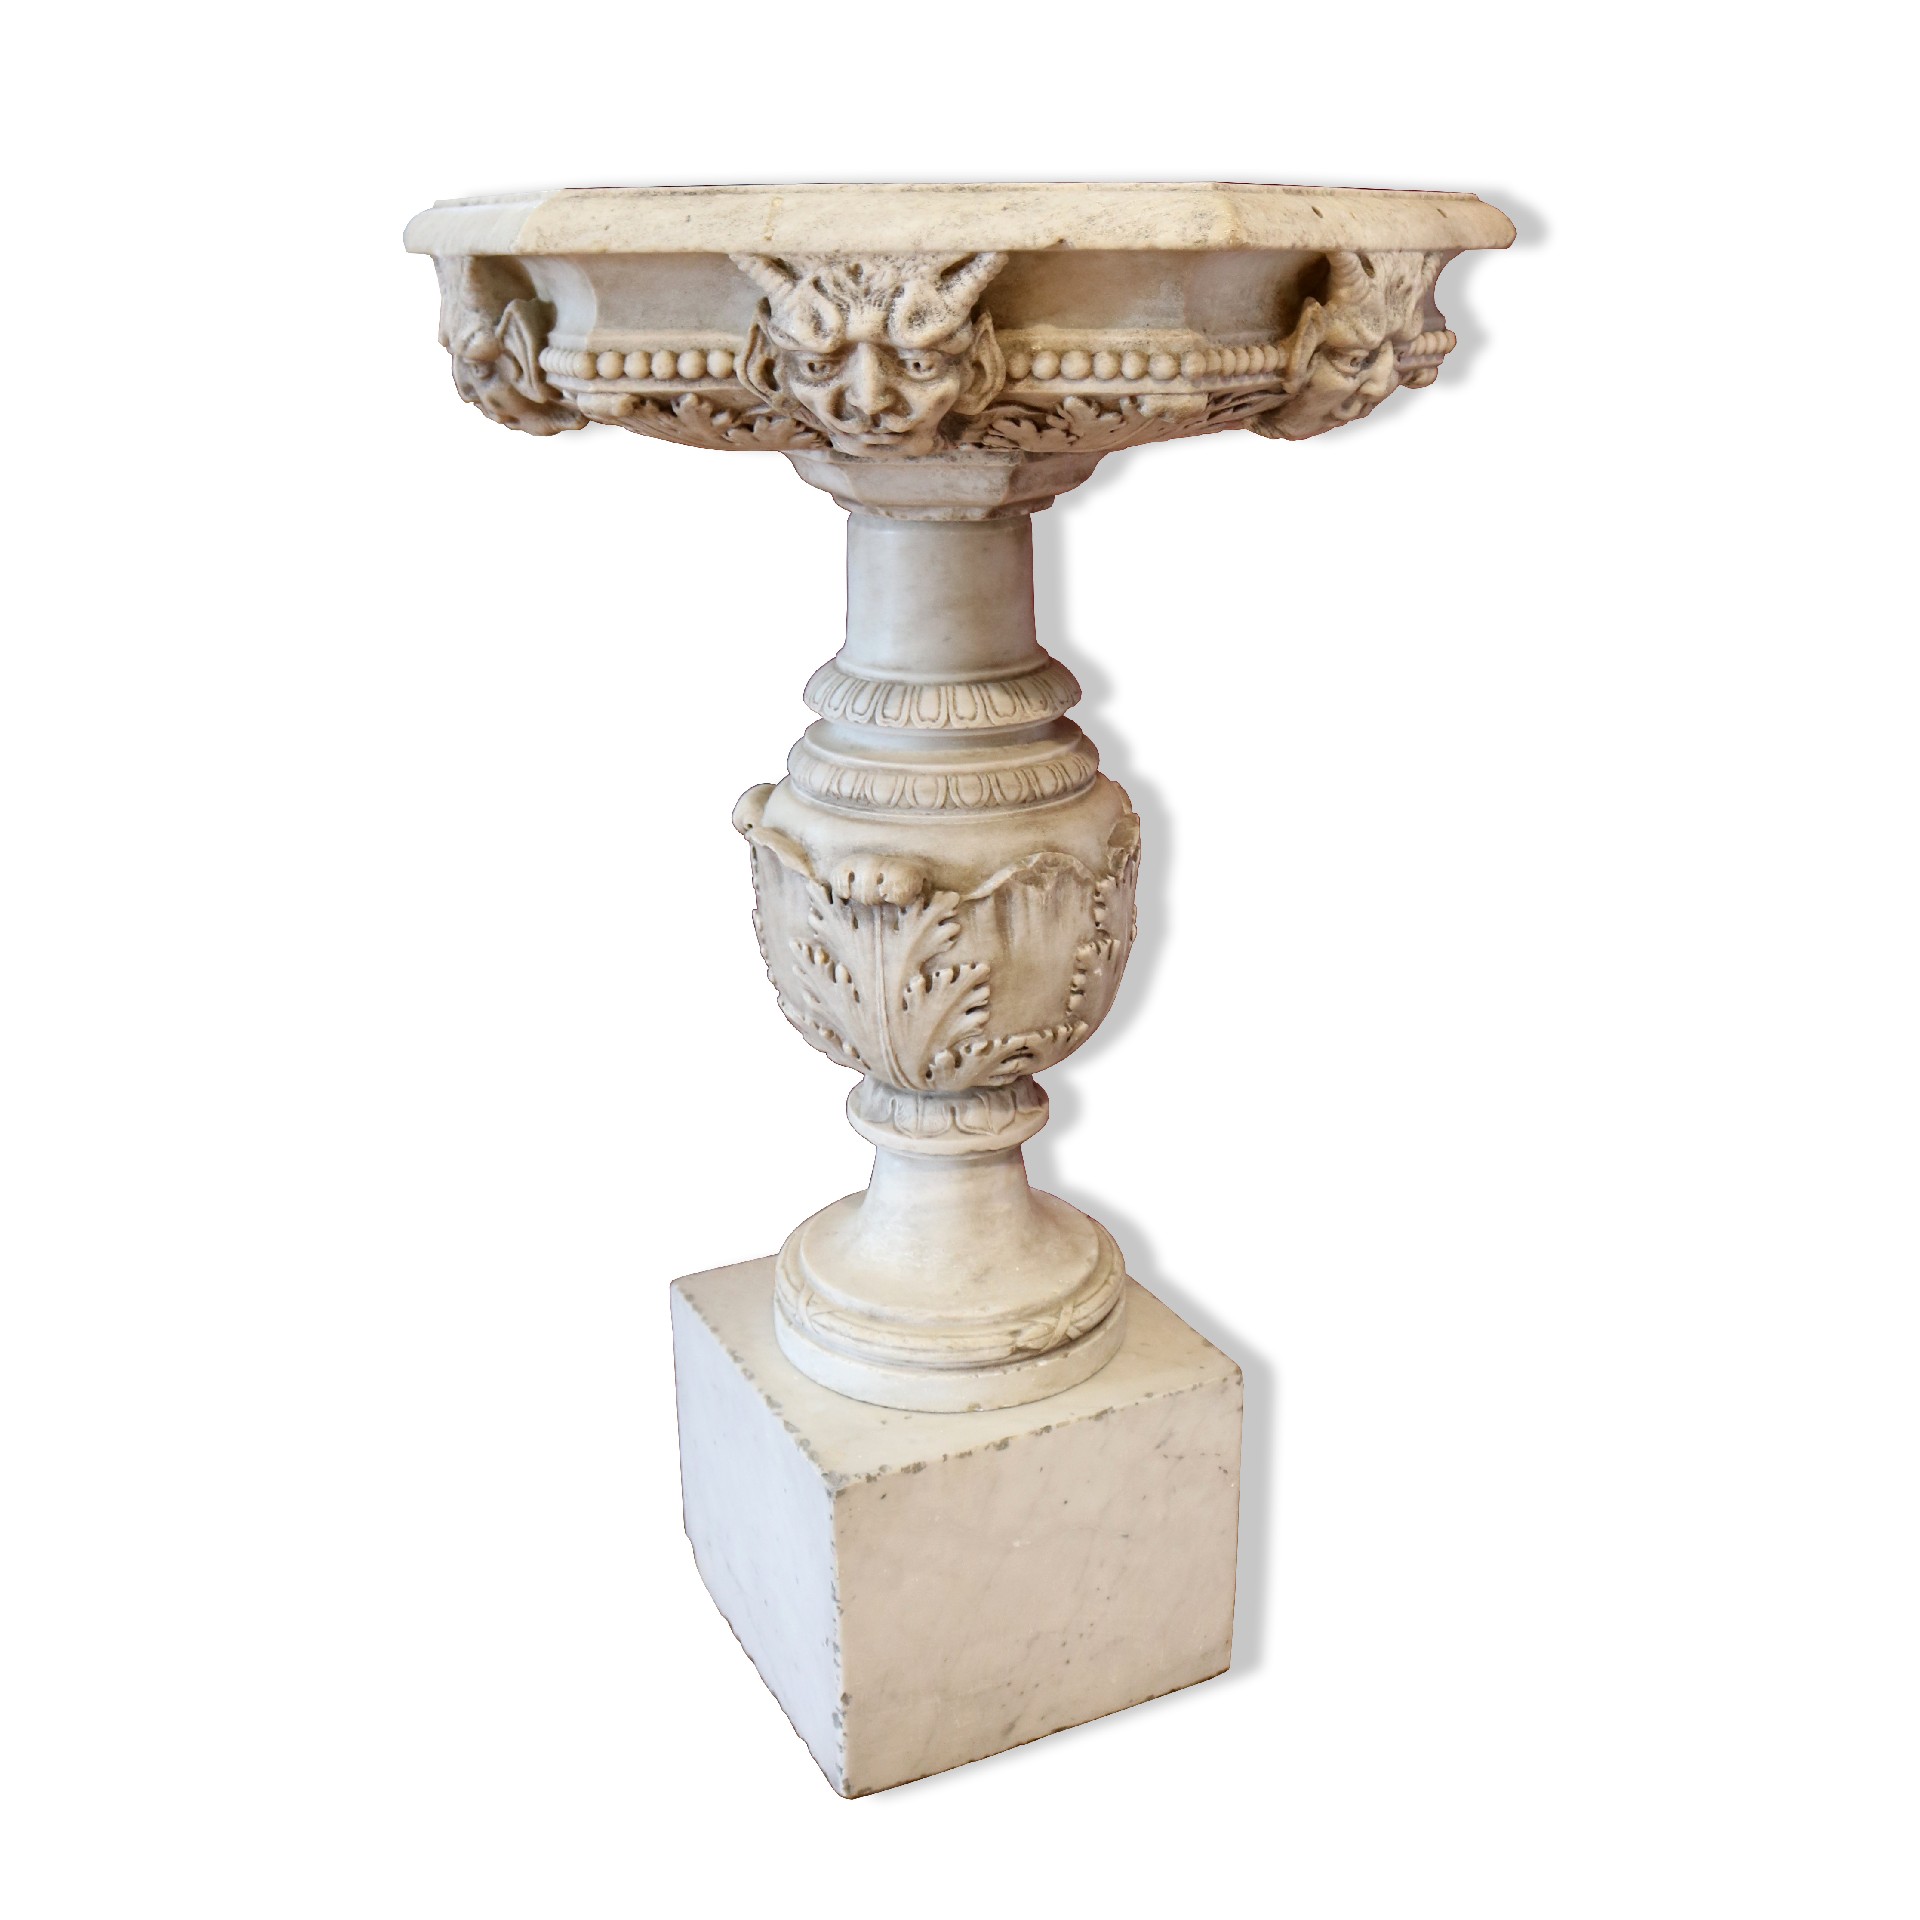 Antica fontana in marmo. Epoca 1700. - Fontane Antiche - Arredo Giardino - Prodotti - Antichità Fiorillo